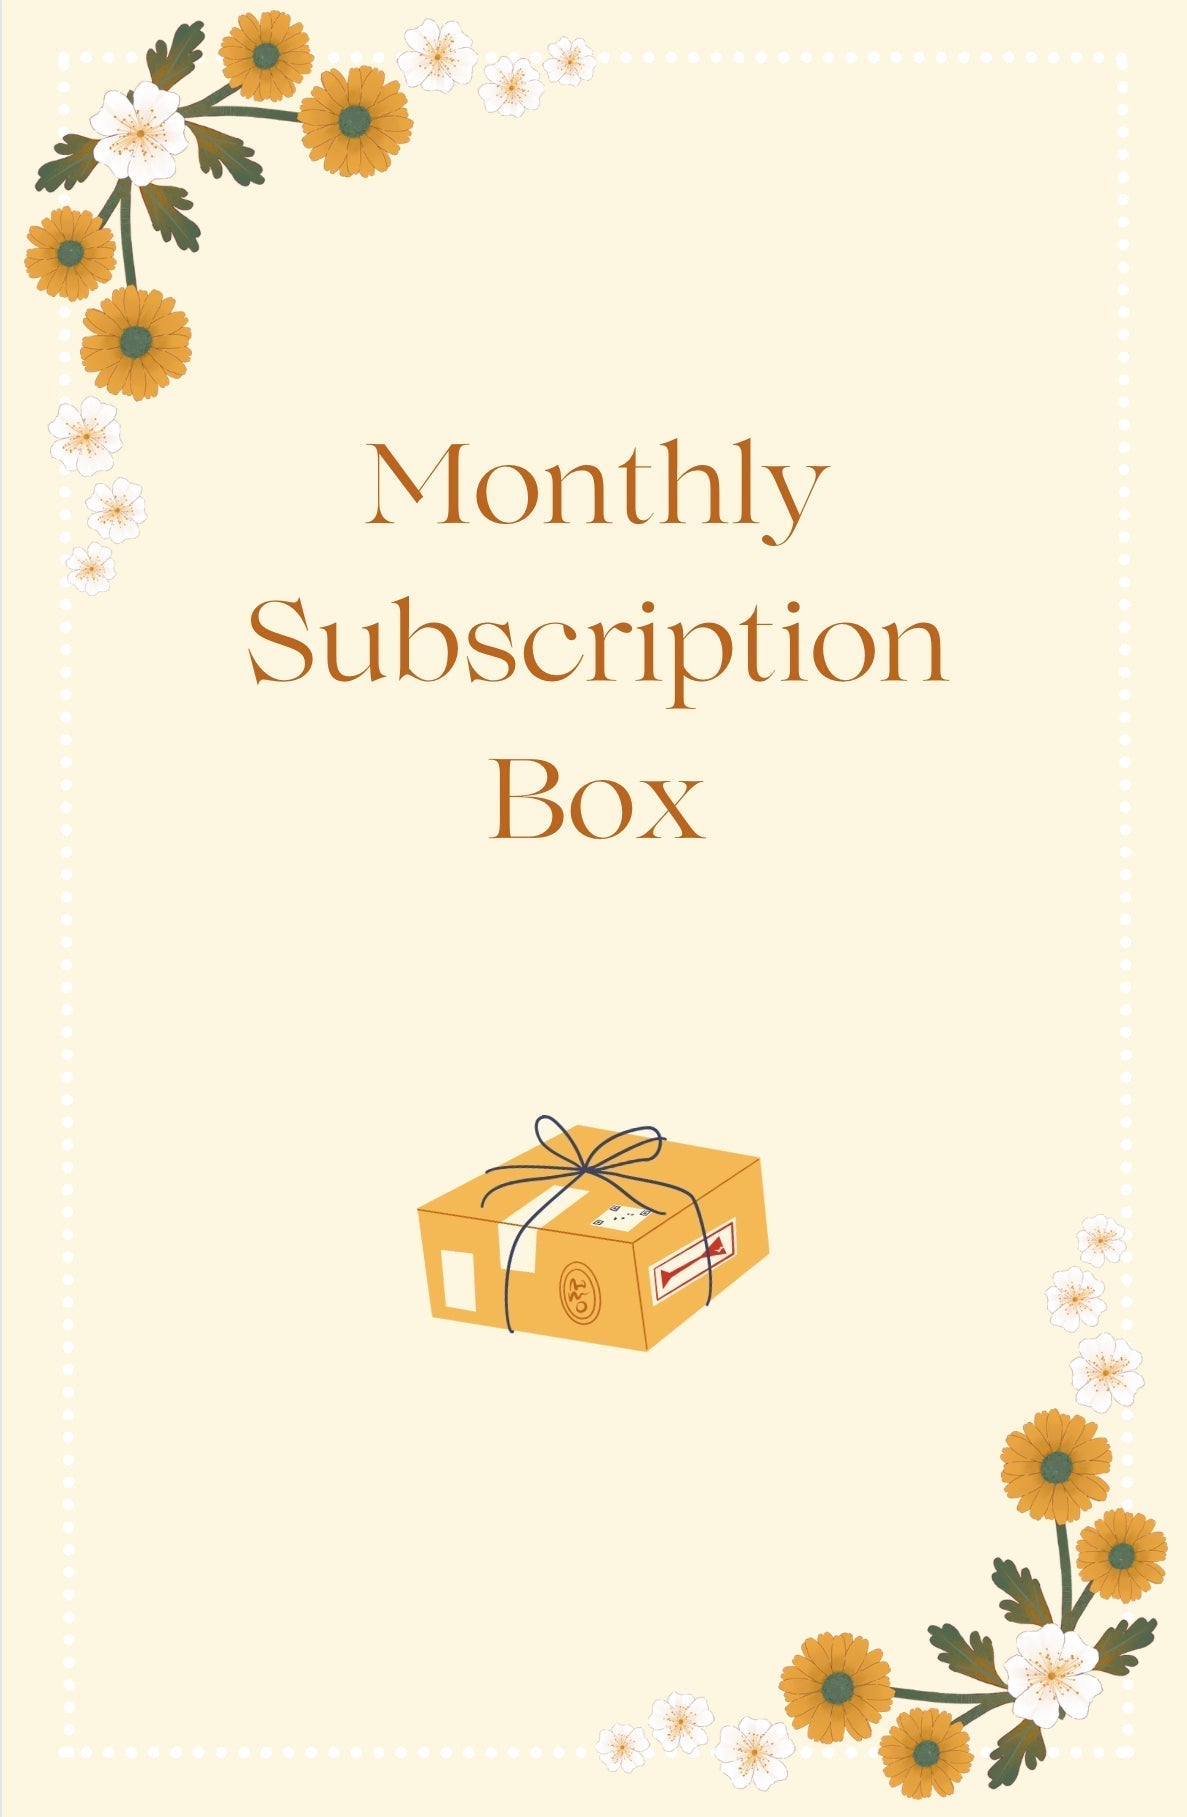 Subscription Box Faith Theme